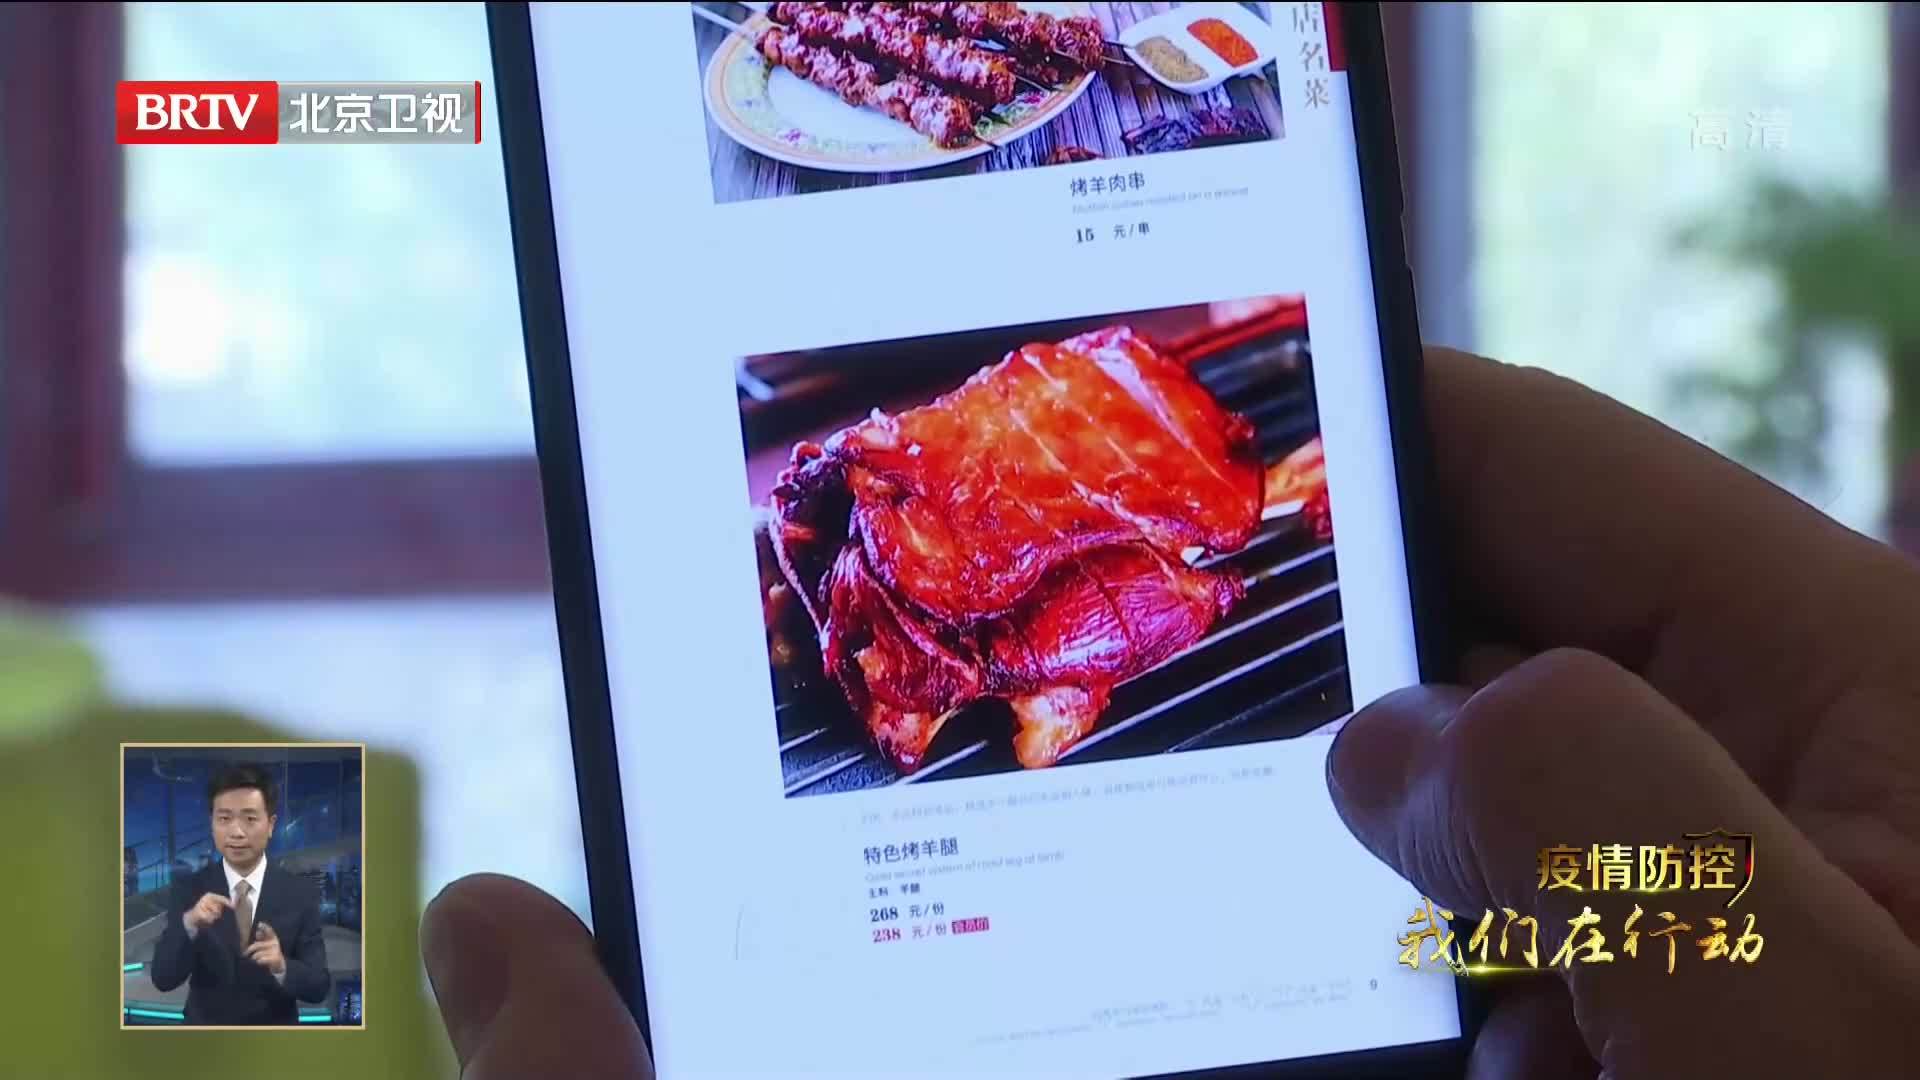 适应防控要求创新菜品拓展渠道 北京餐饮企业暂停堂食不打烊